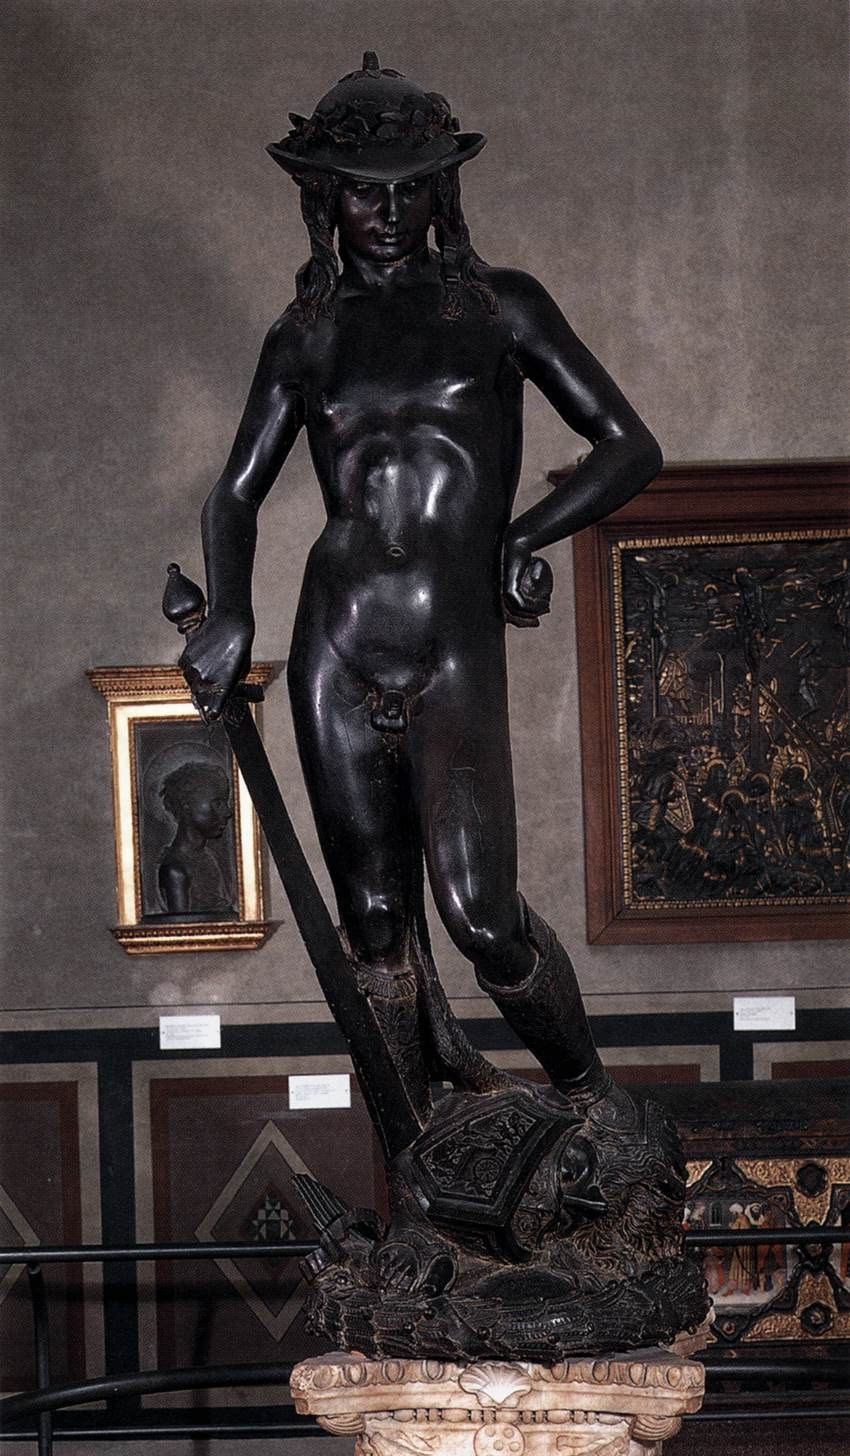 Donatello (Donato di Niccolò di Betto Bardi) (Florencia, Italia, 1386 ibídem, 13 de diciembre de 1466) fue un famoso artista y escultor italiano de principios del Renacimiento.